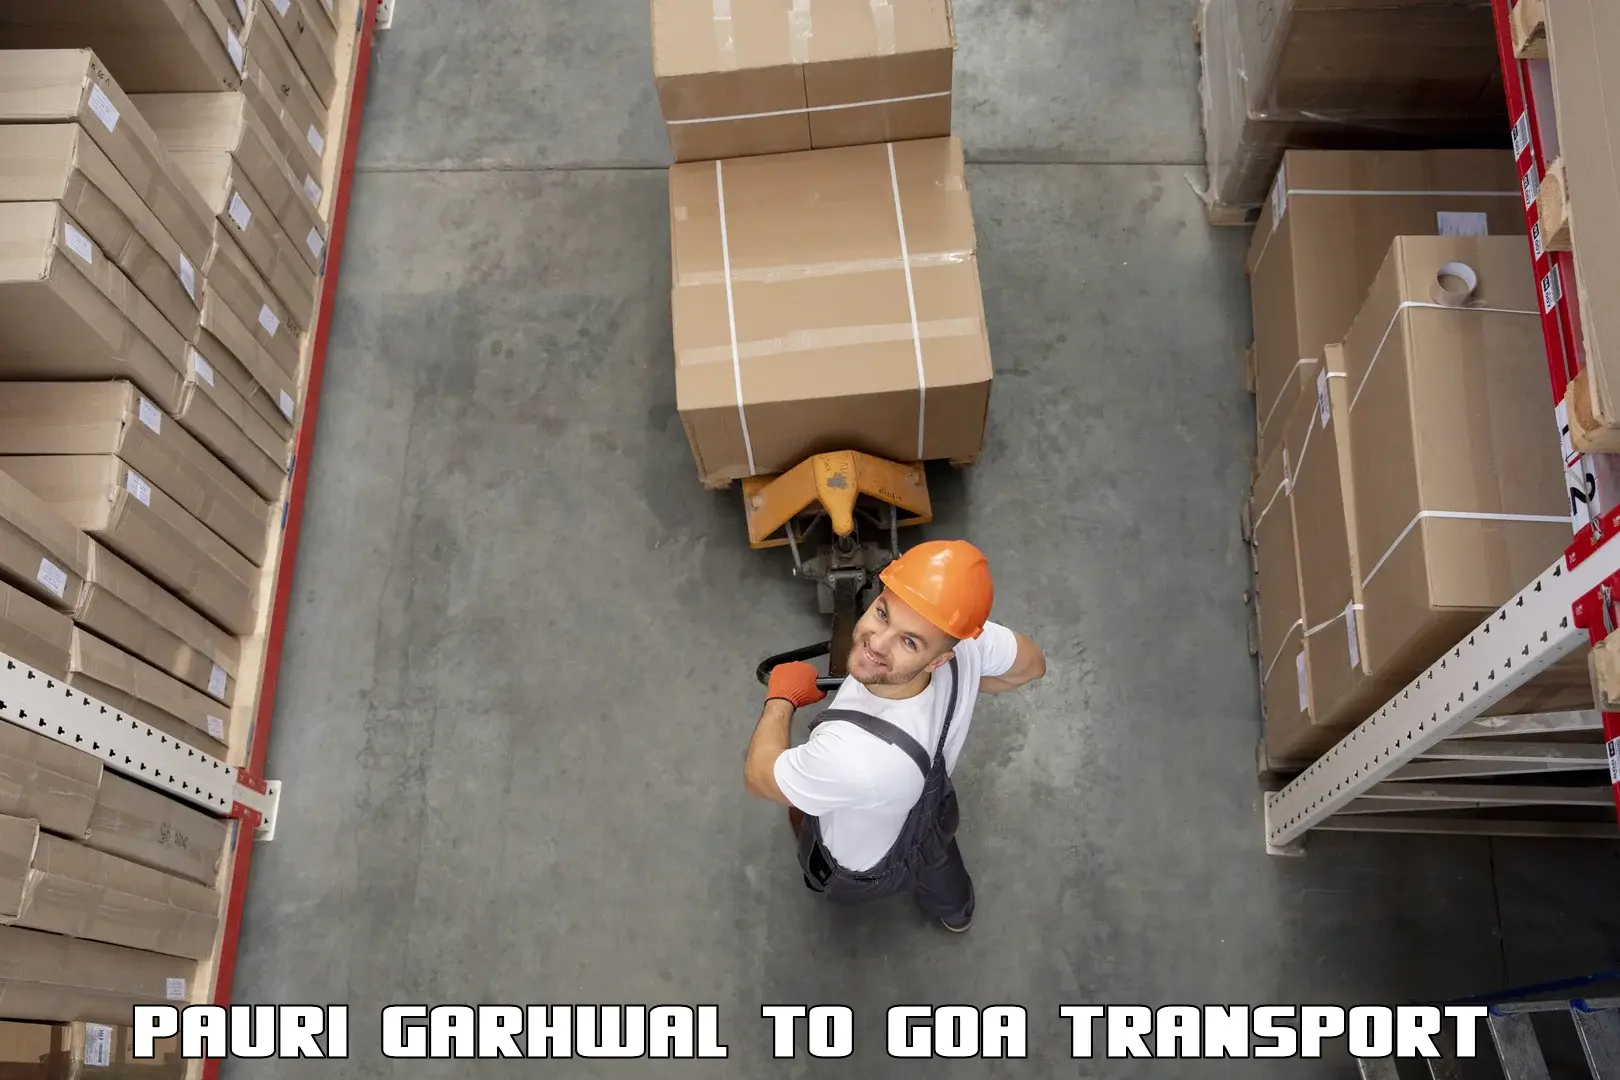 Furniture transport service Pauri Garhwal to Panjim